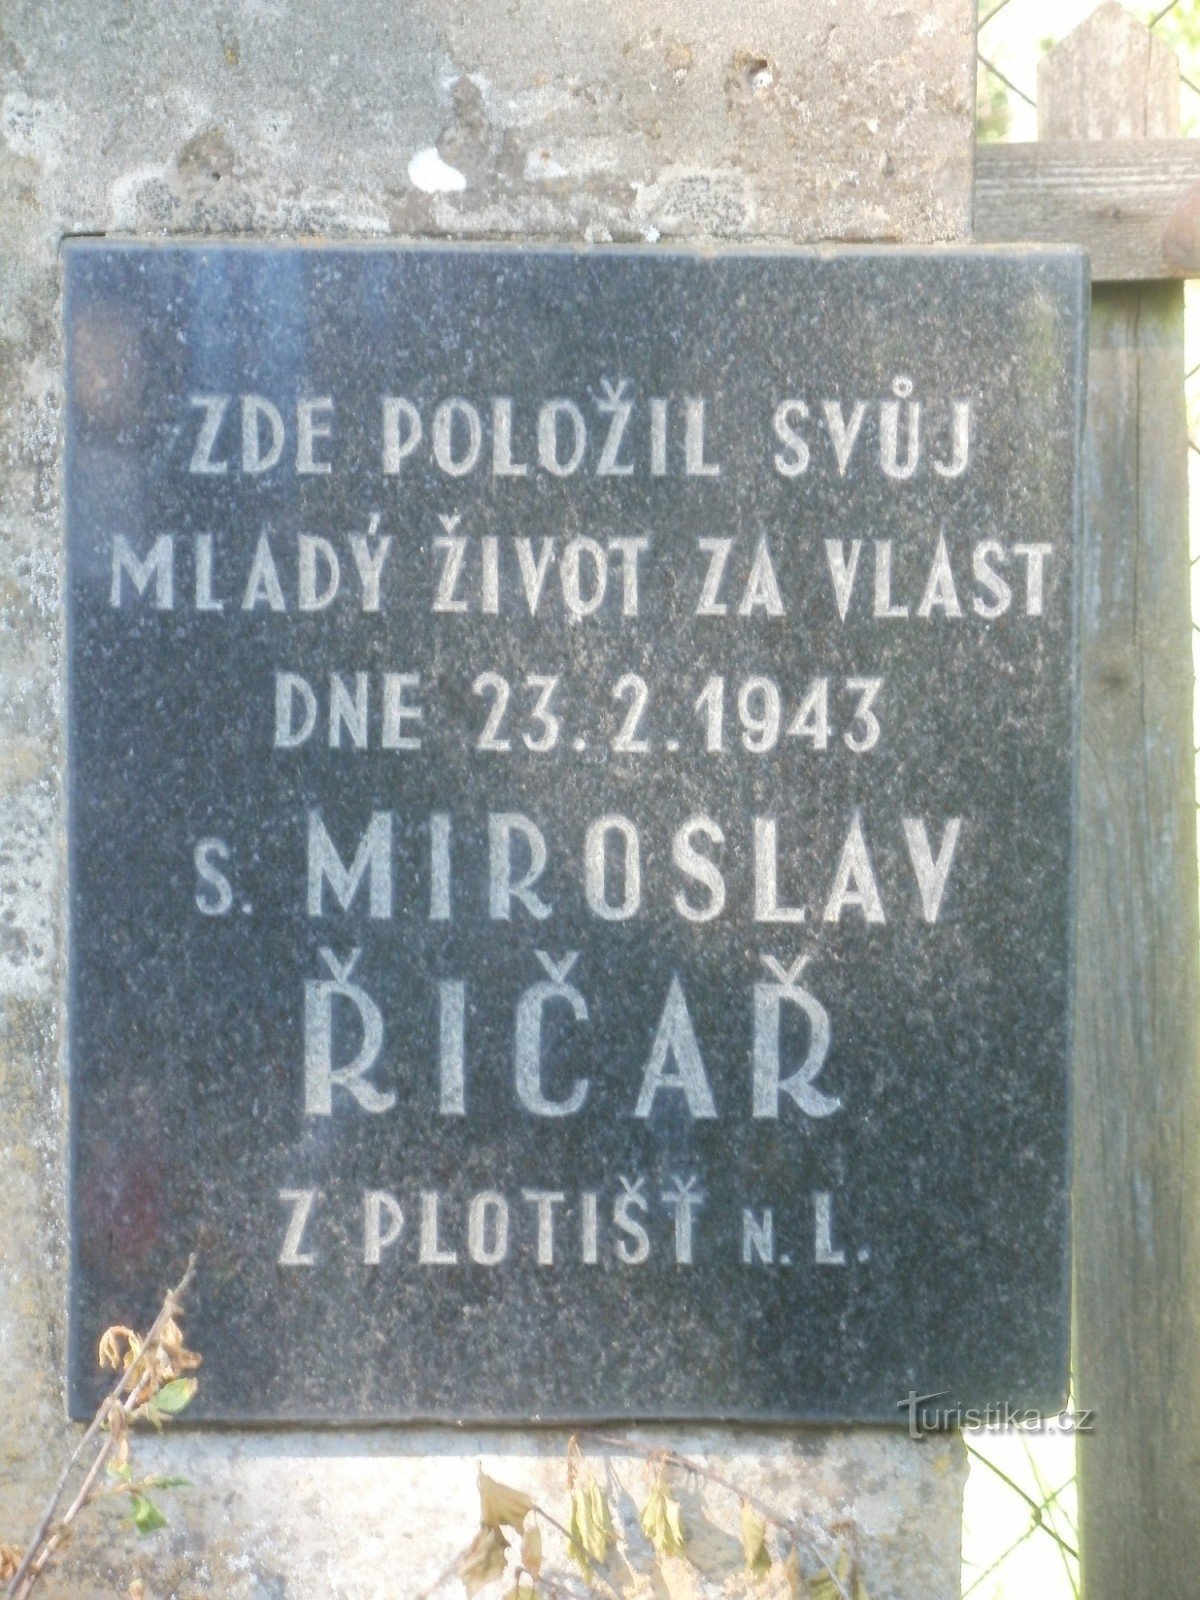 Týniště nad Orlicí附近的Říčař先生纪念碑